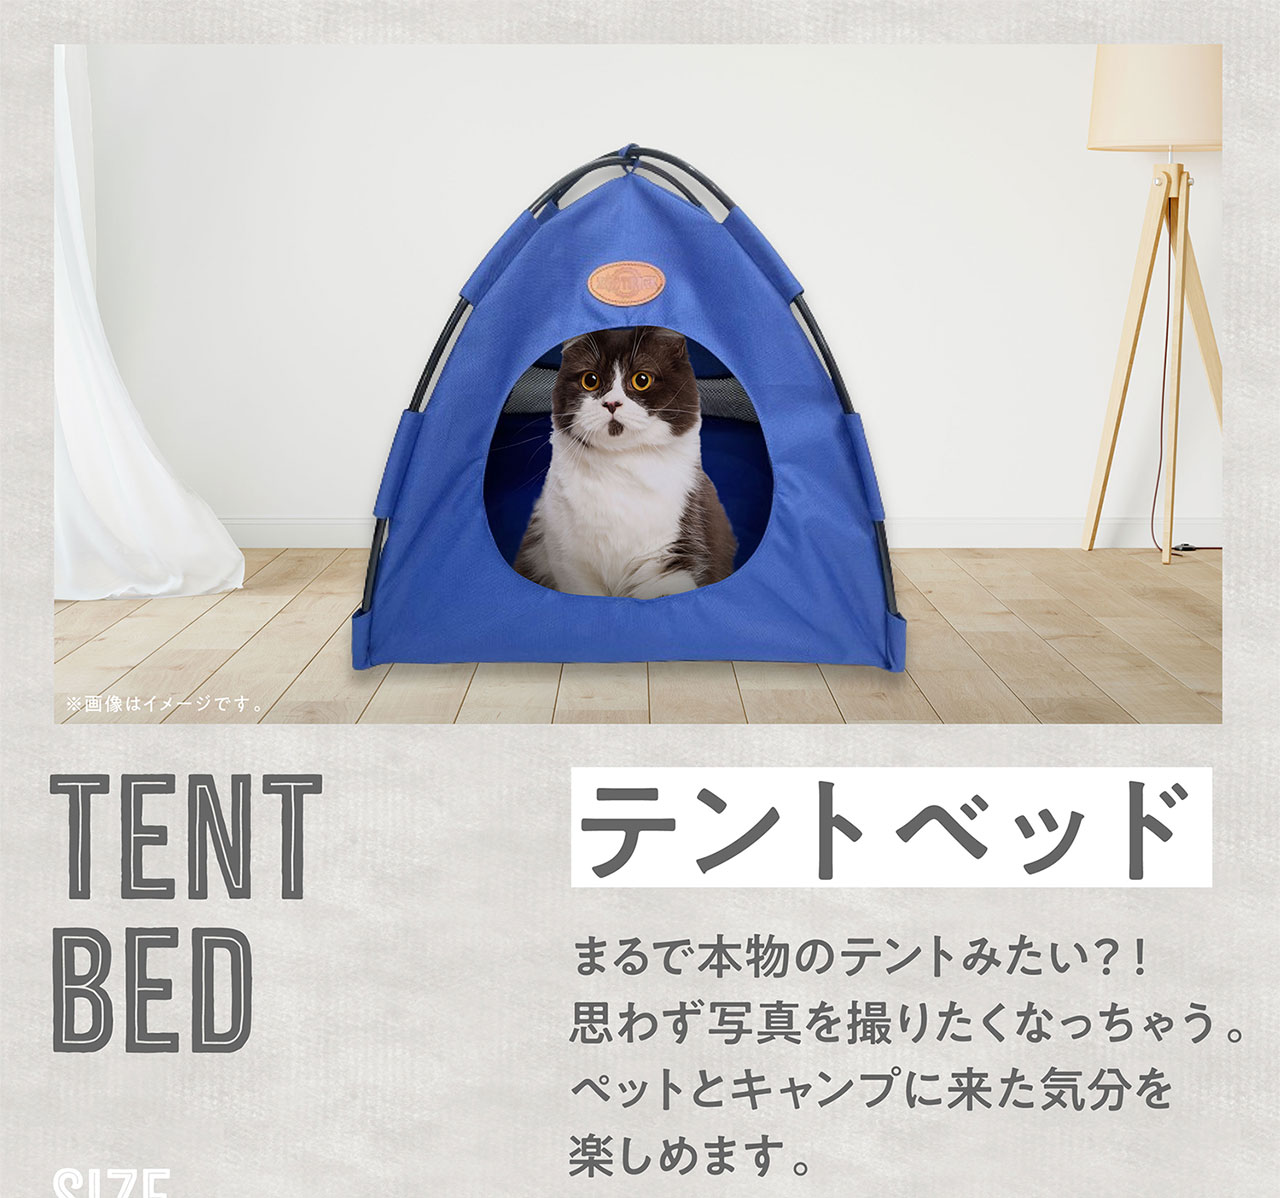 テントベッド